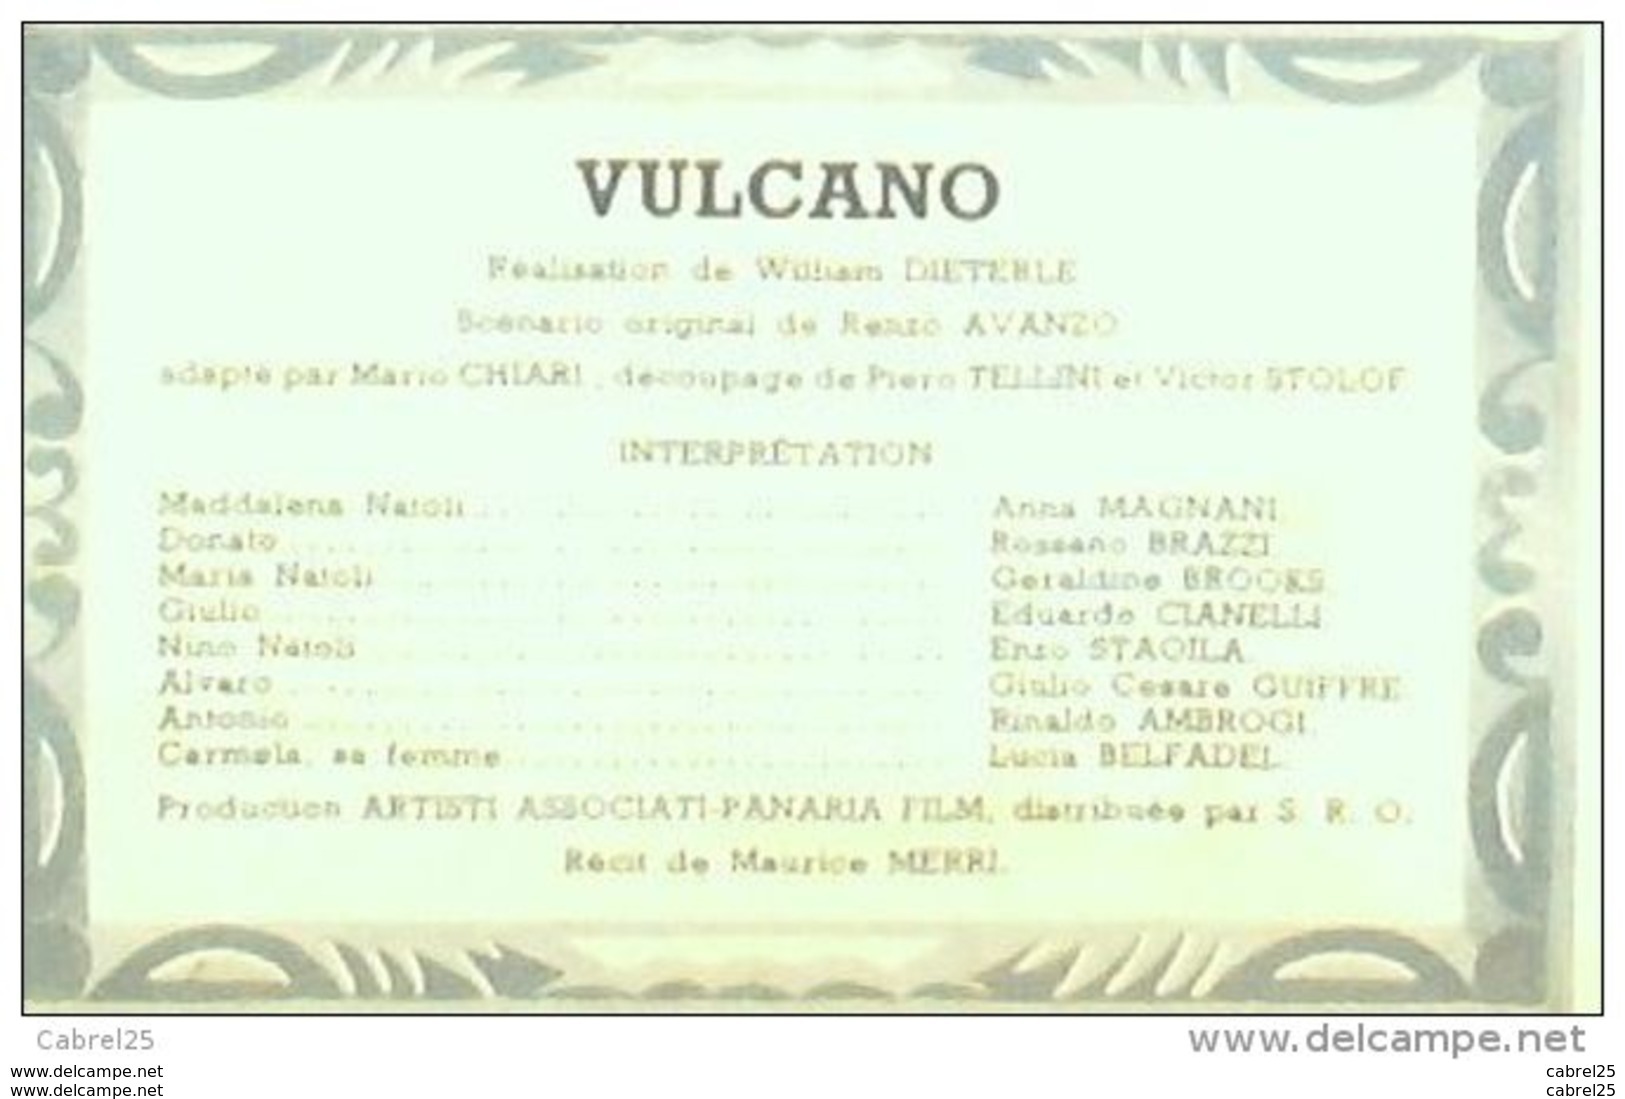 CINEMA-VULCANO-ANNA MAGNANI-ROSSANO BRAZZI-LUCIA BELFADEL-MF 225-1950 - Film